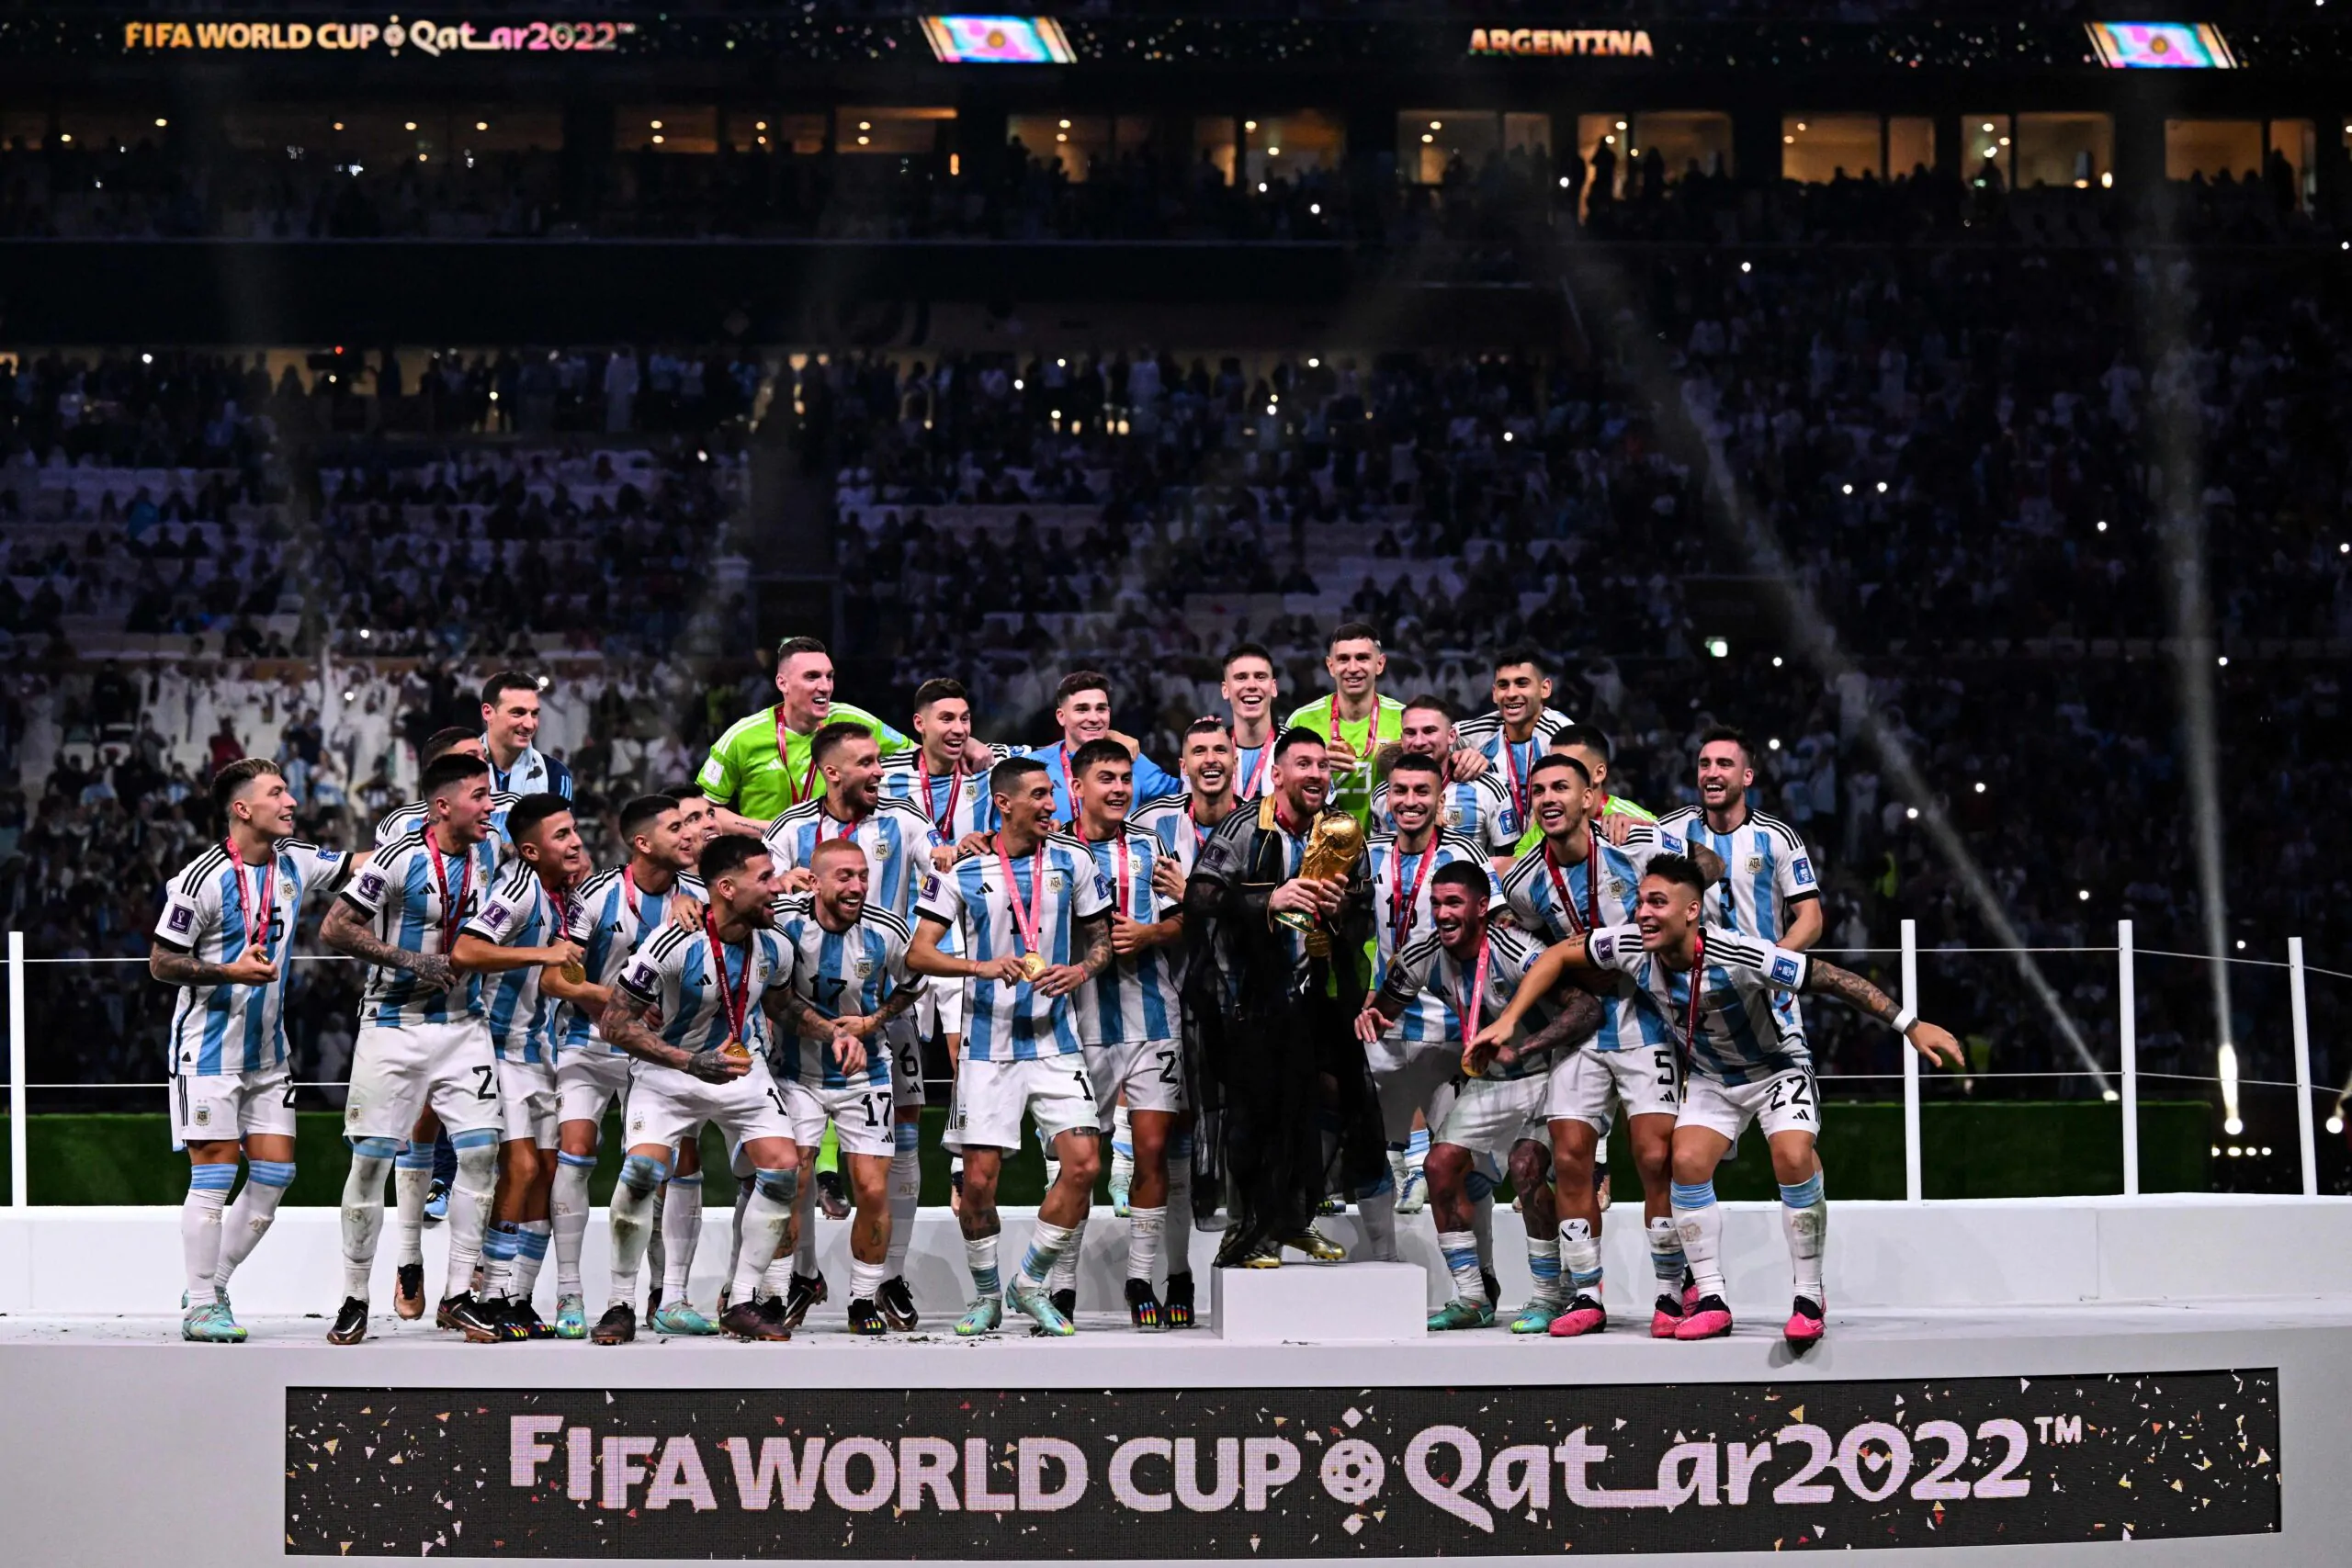 Campione del Mondo con l’Argentina, ma il tecnico non ci sta: “Gli parlerò di alcuni festeggiamenti”